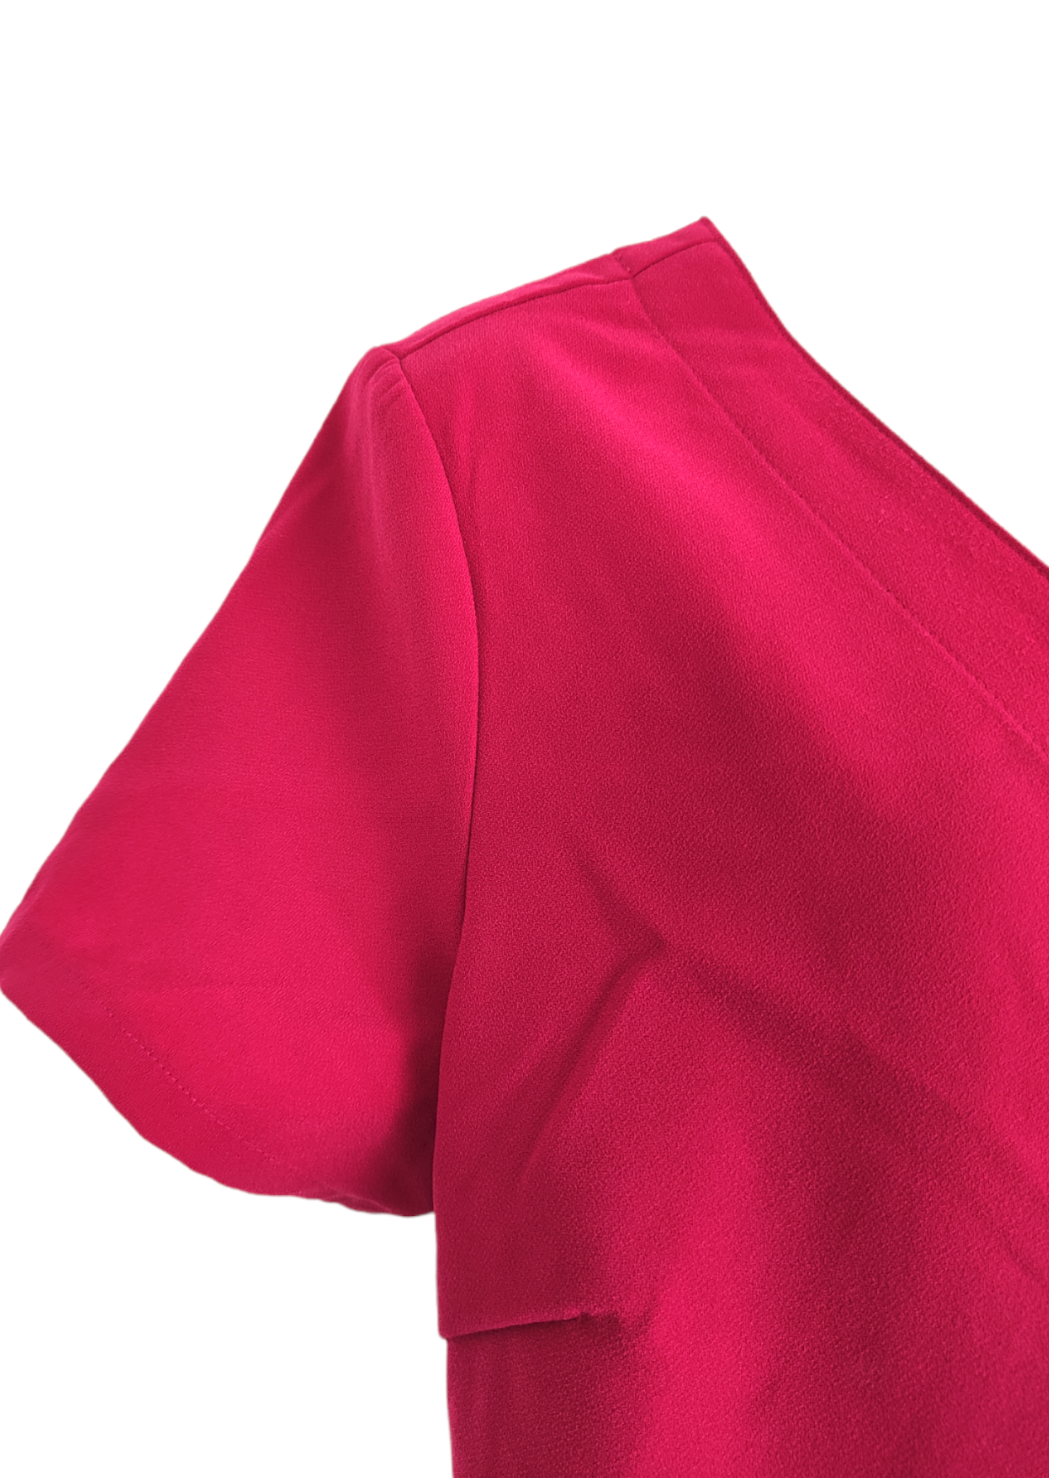 Midi Κοντομάνικο Φόρεμα NEXT σε Φούξια Χρώμα (Medium)